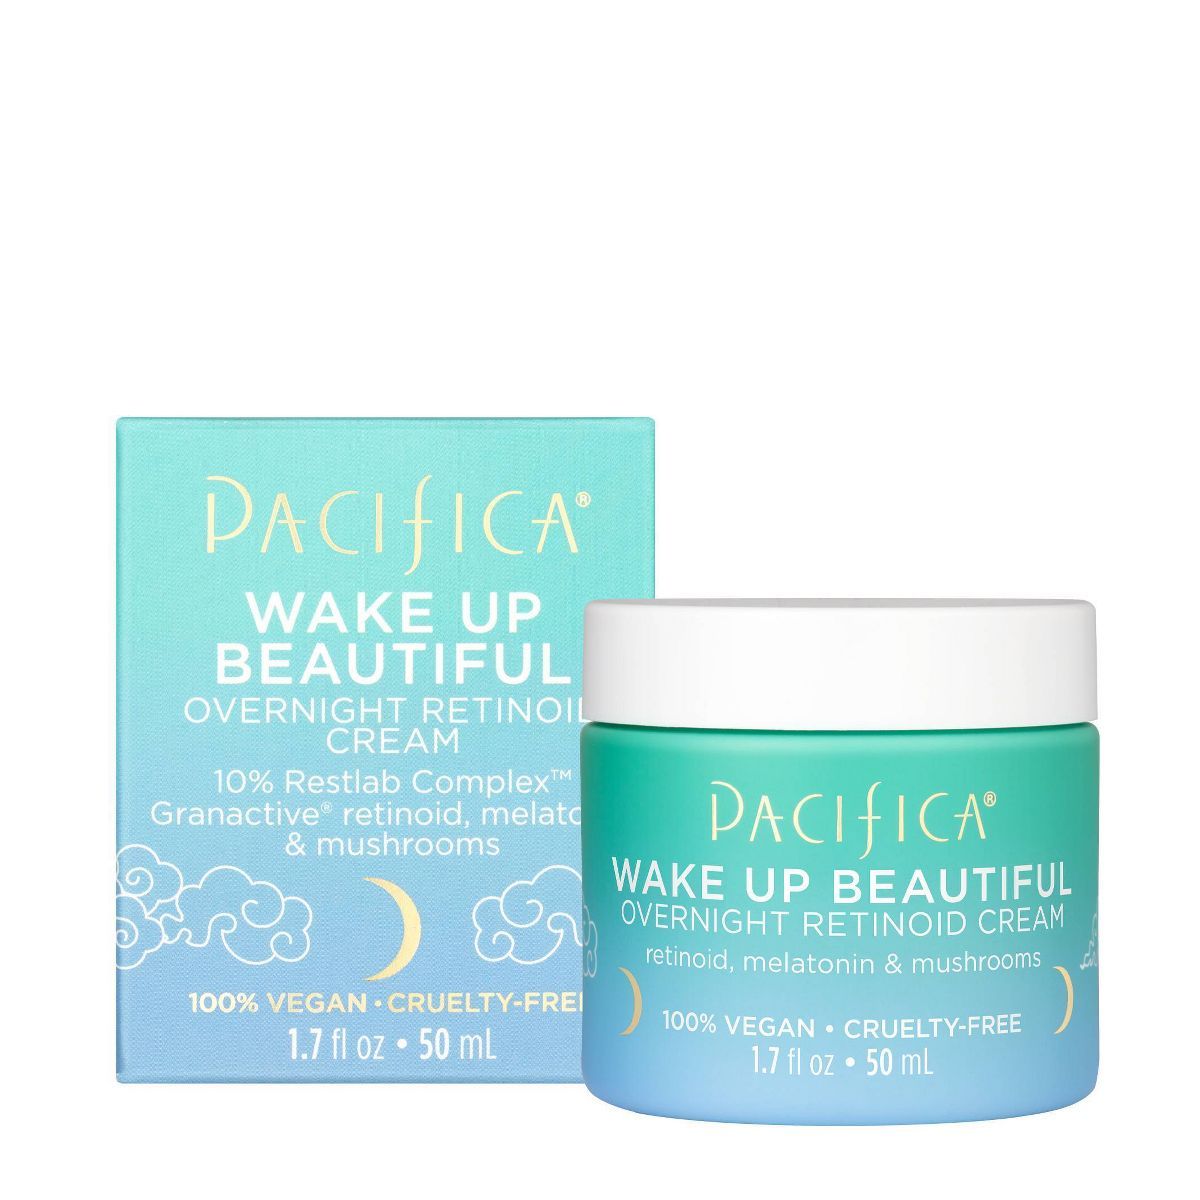 Pacifica Wake Up Beautiful Overnight Retinol Cream - 1.7 fl oz | Target